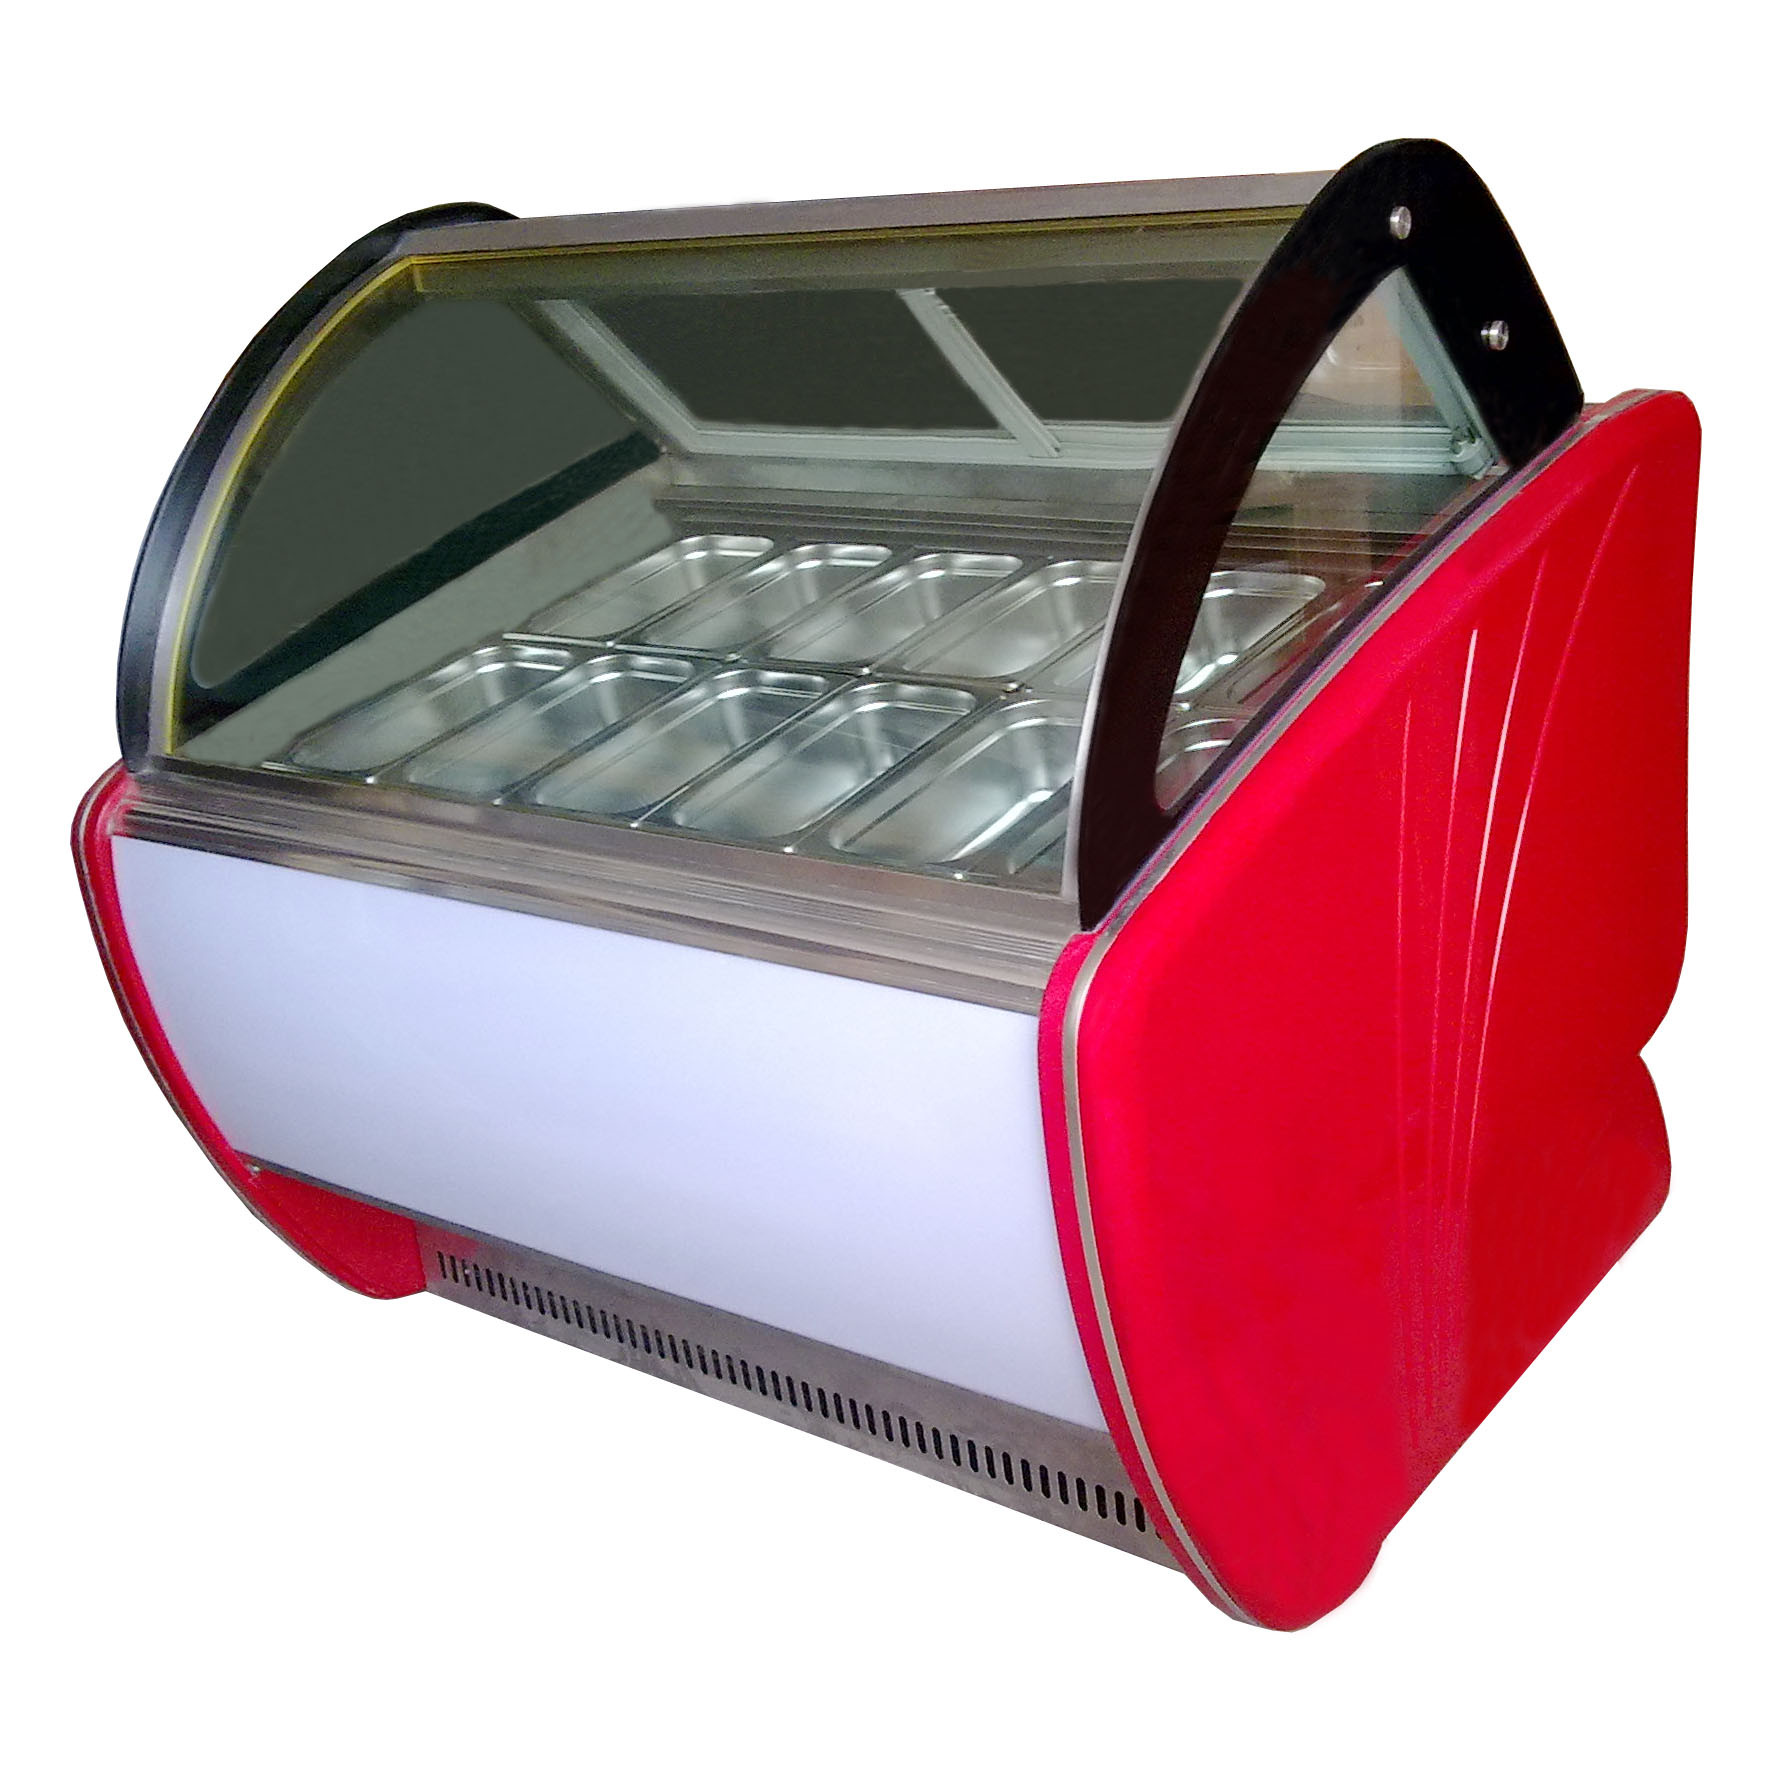 Ψυγεία επίδειξης παγωτού εξοικονόμησης ενέργειας με 20 τηγάνια -22 - 18 °C OEM